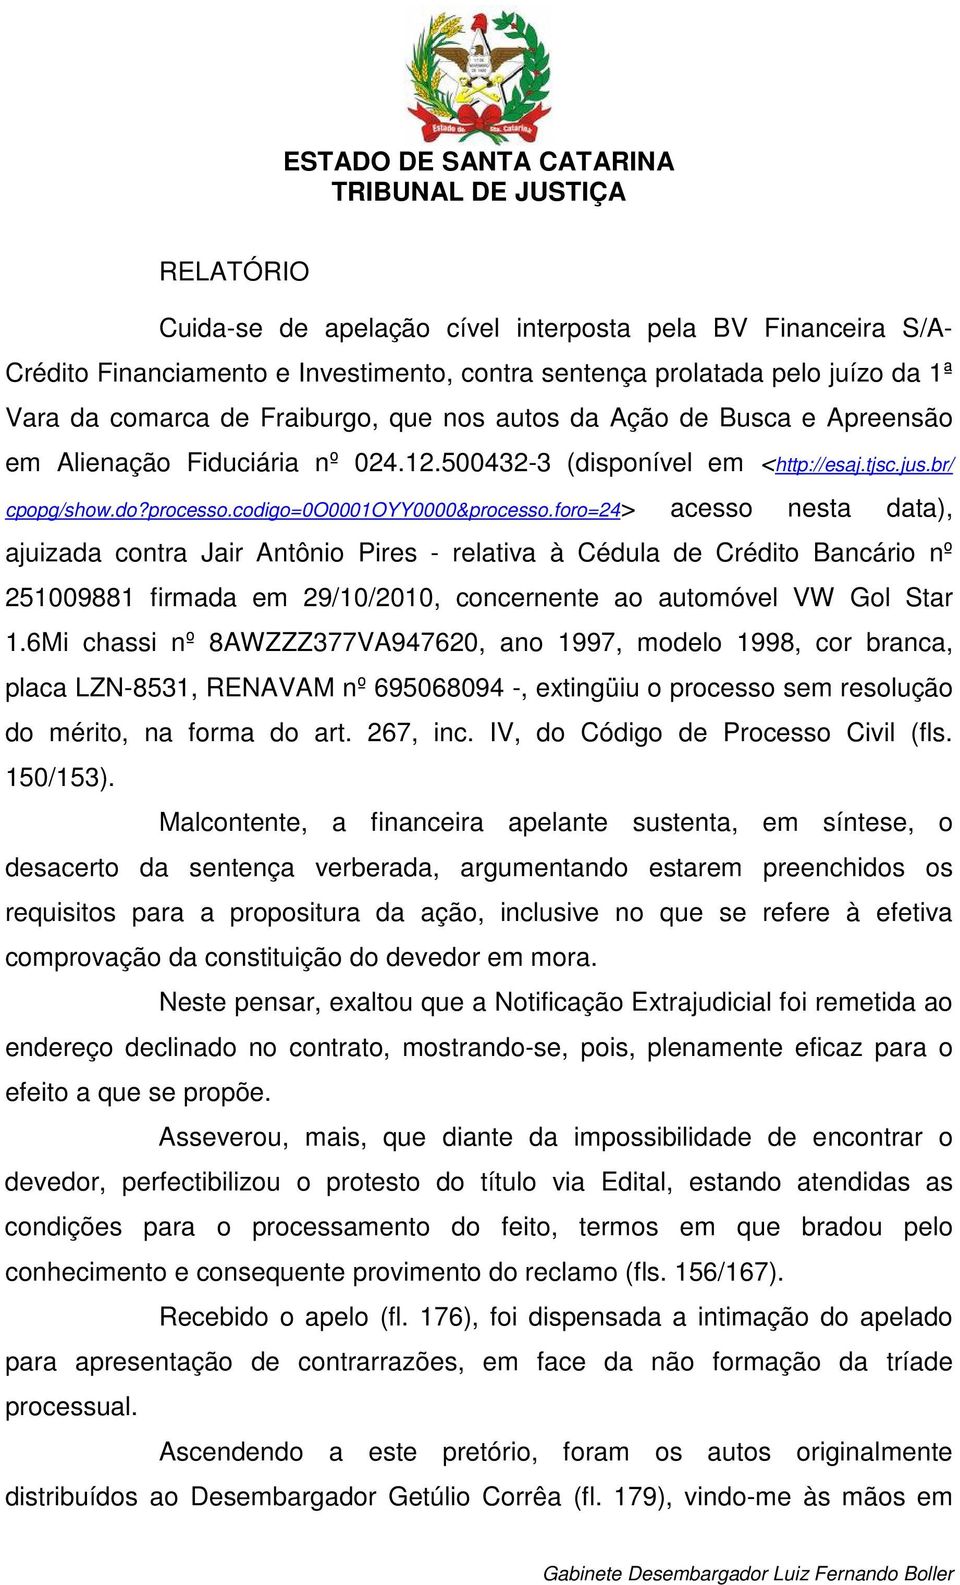 foro=24> acesso nesta data), ajuizada contra Jair Antônio Pires - relativa à Cédula de Crédito Bancário nº 251009881 firmada em 29/10/2010, concernente ao automóvel VW Gol Star 1.